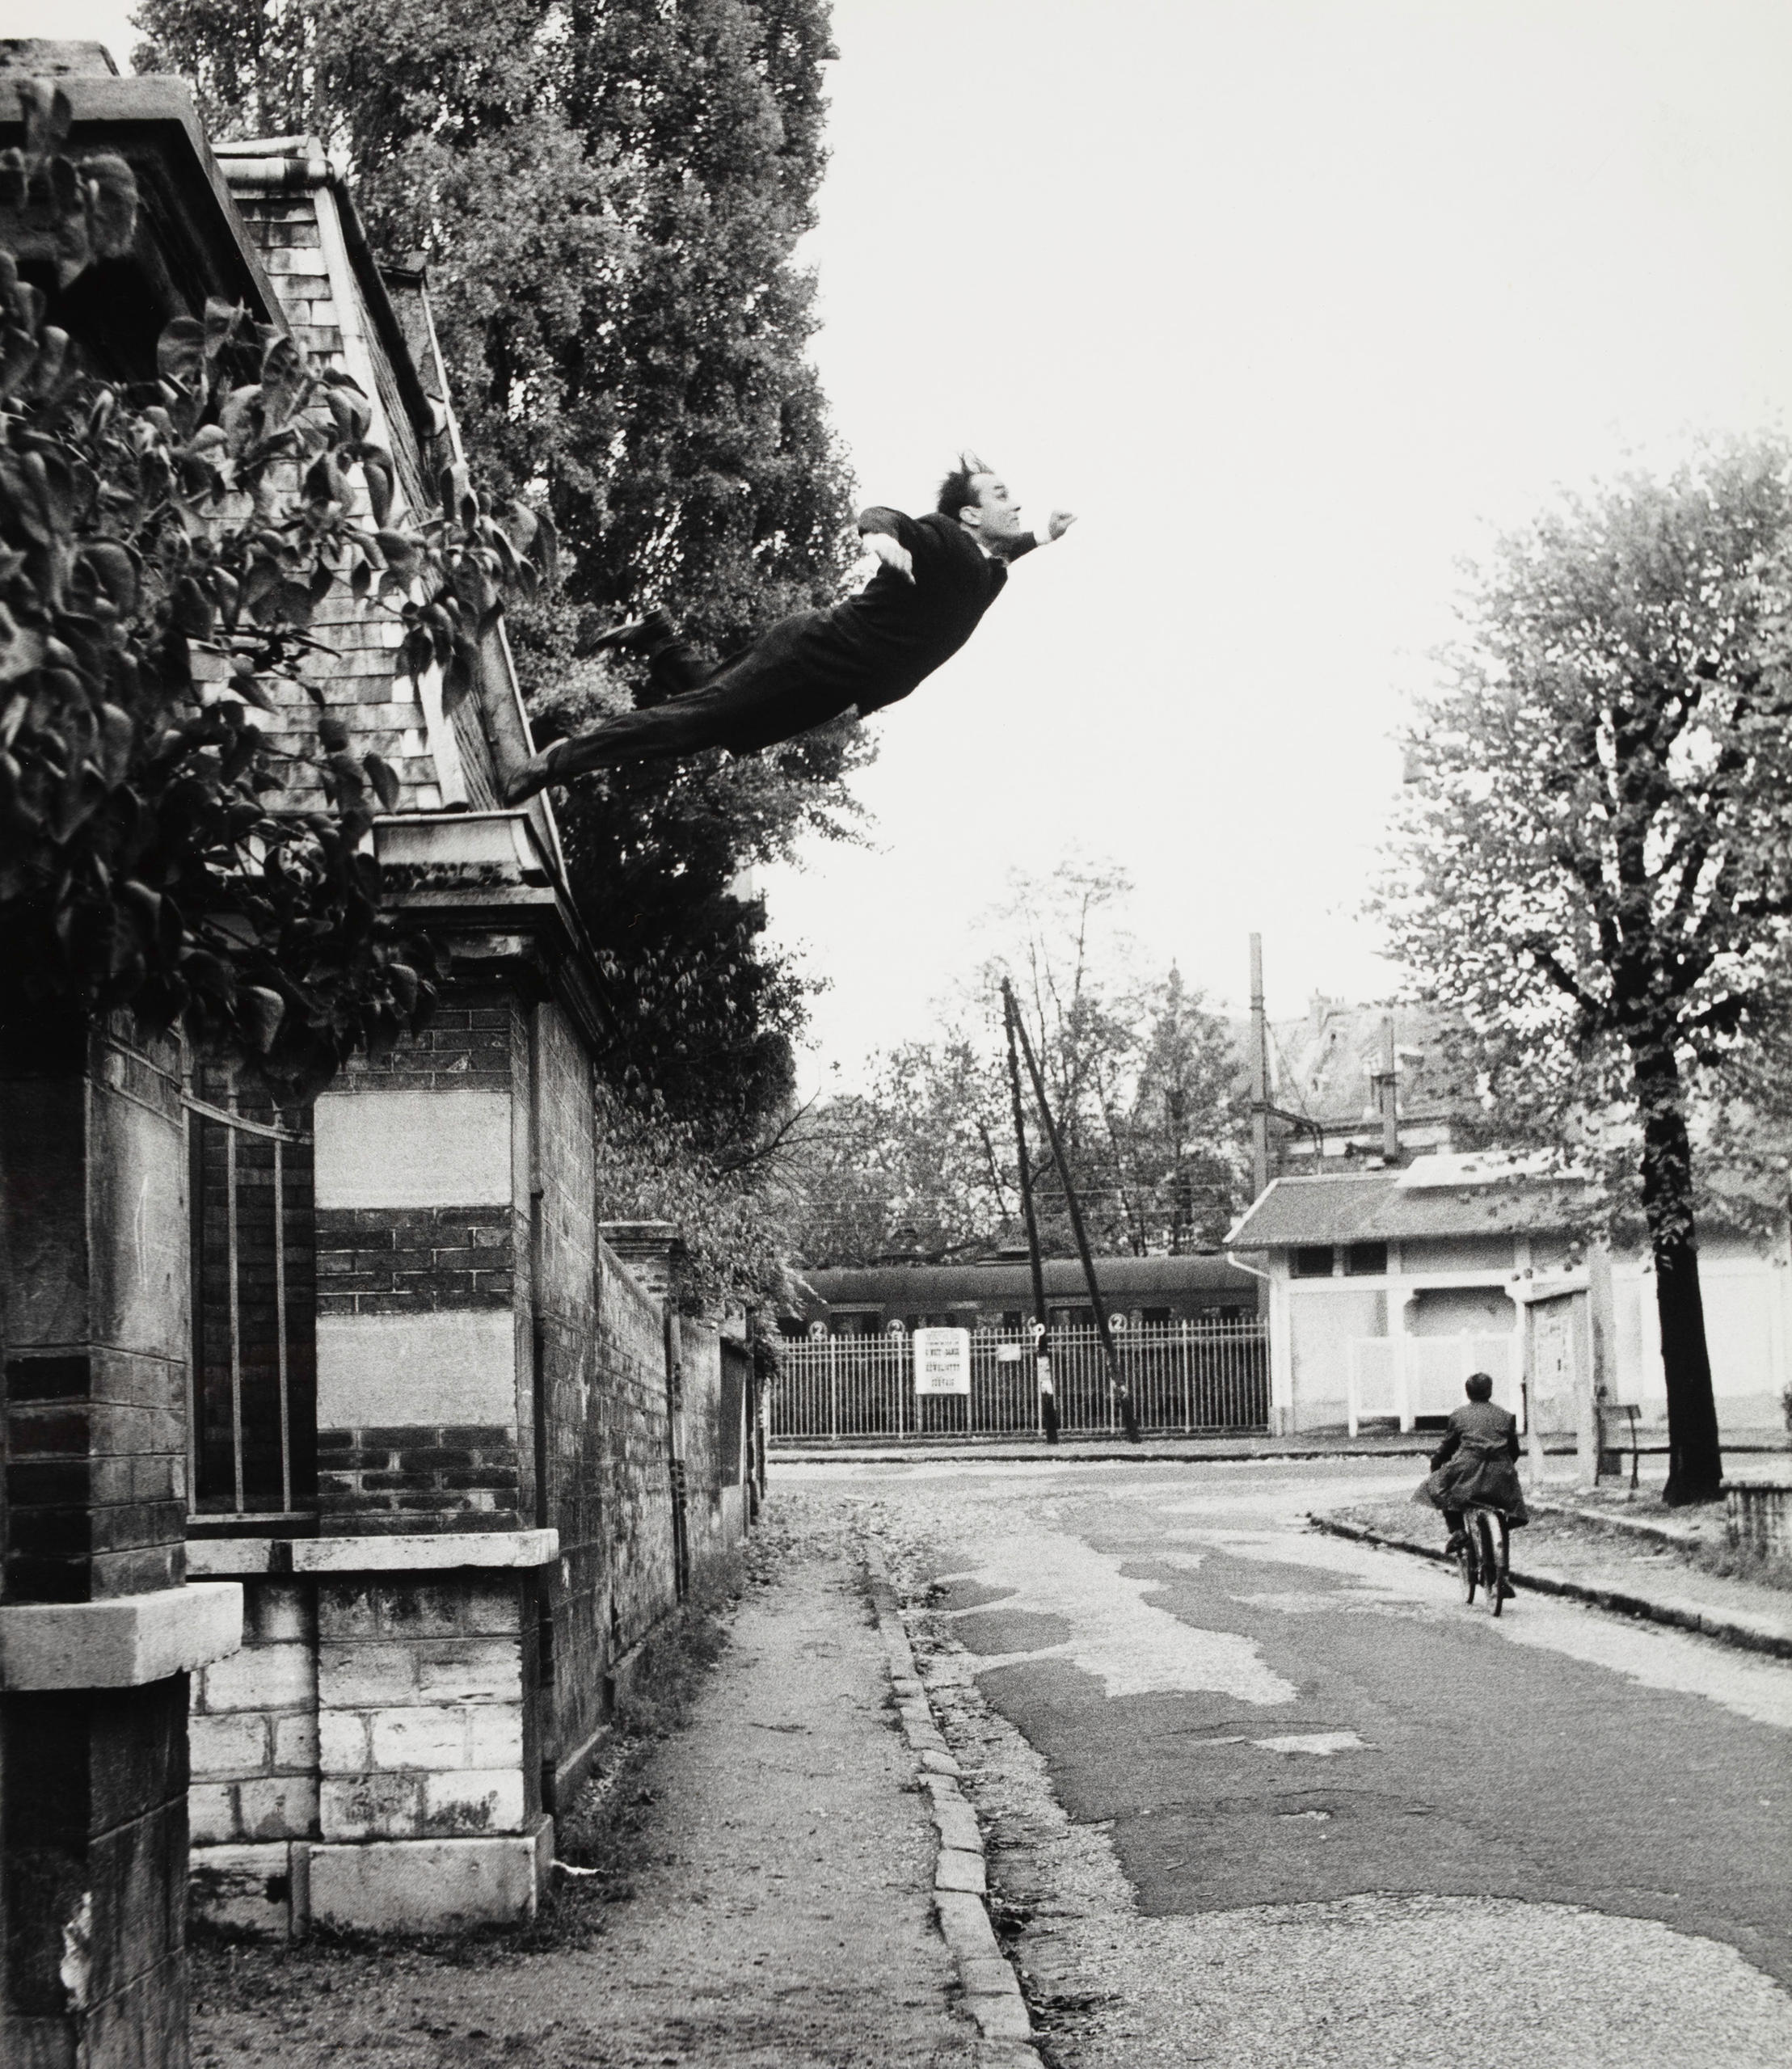 (b/n) un uomo sembra lasciarsi cadere dal cornicione di una casa verso la strada da un altezza di alcuni metri